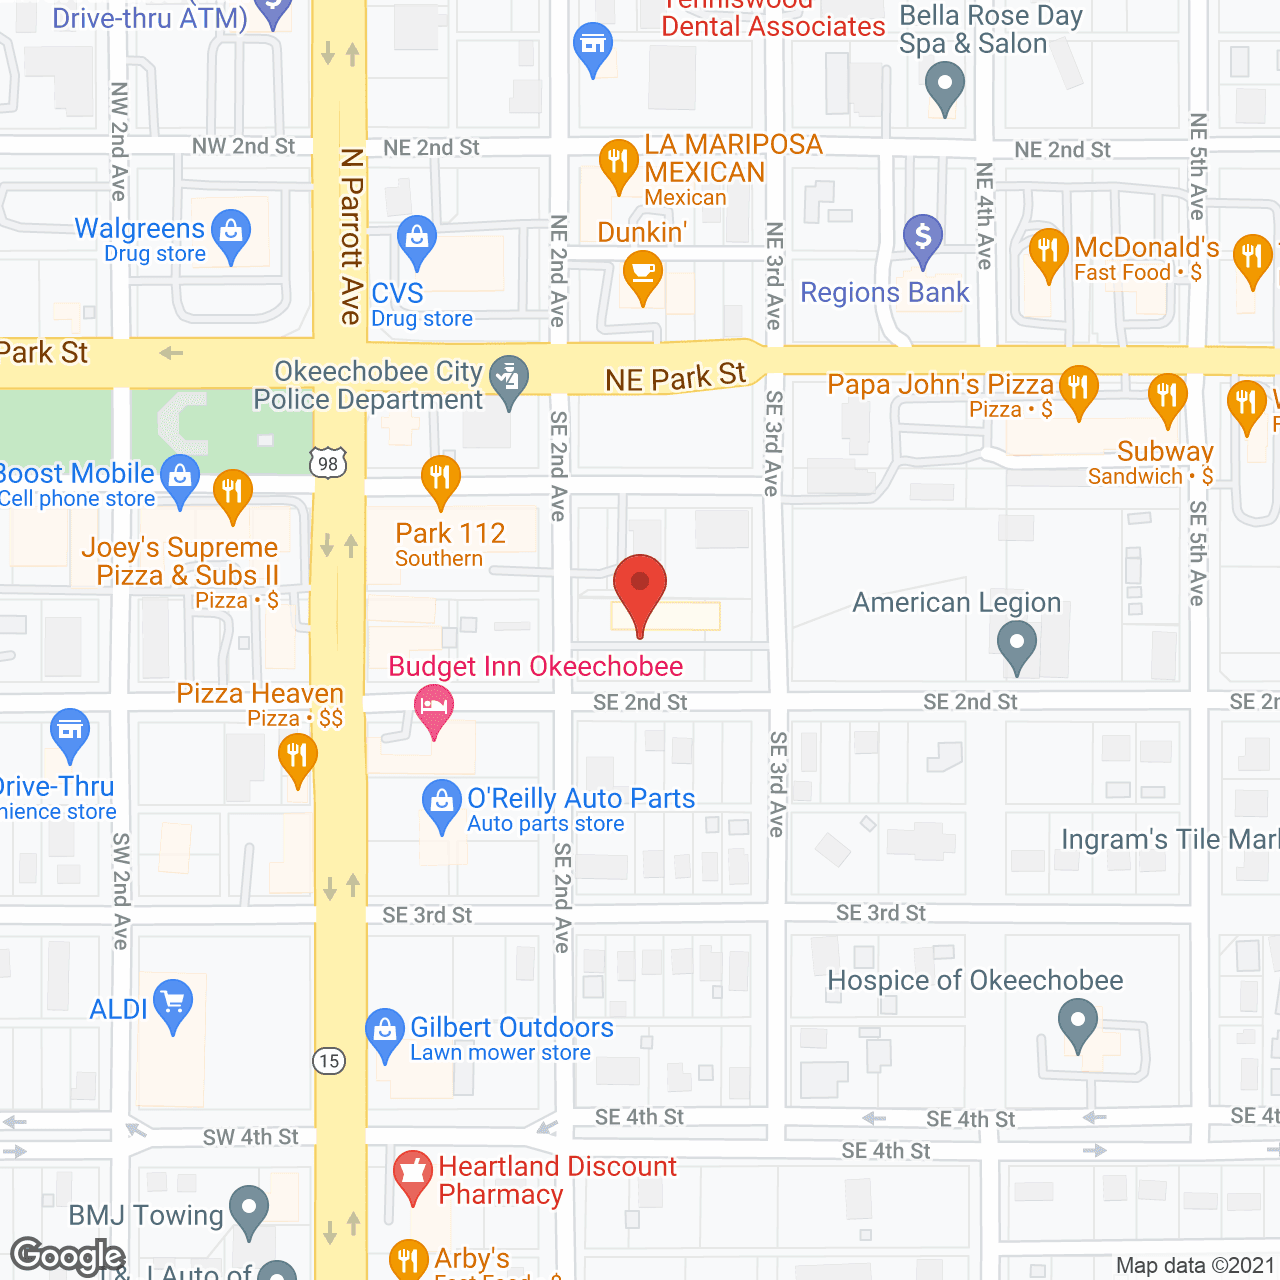 Grand Oaks of Okeechobee in google map